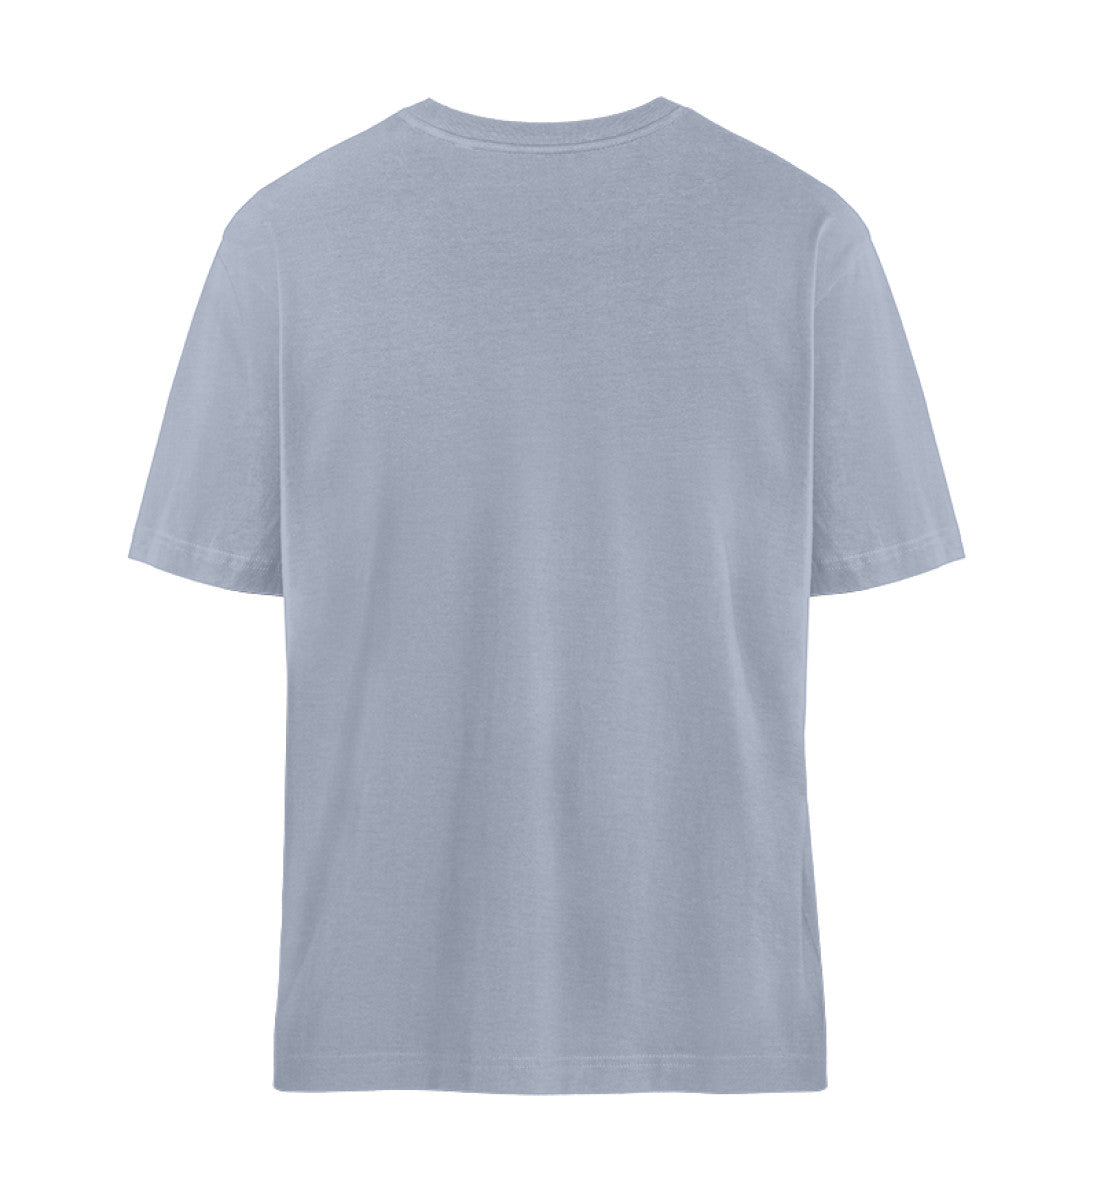 Chestprint Cayo-Island T-Shirt